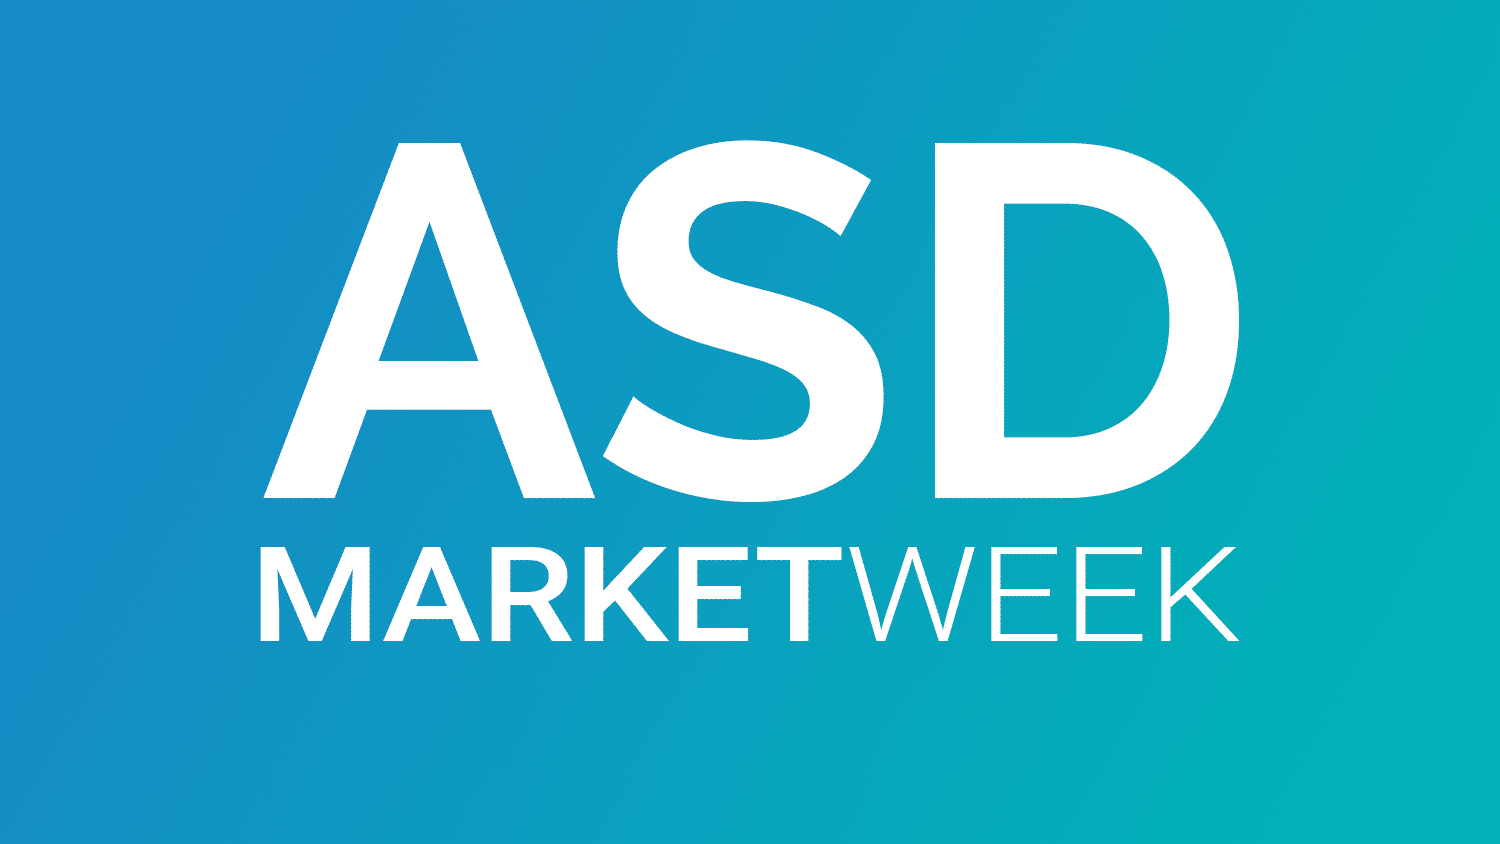 Asd Market Week 2022